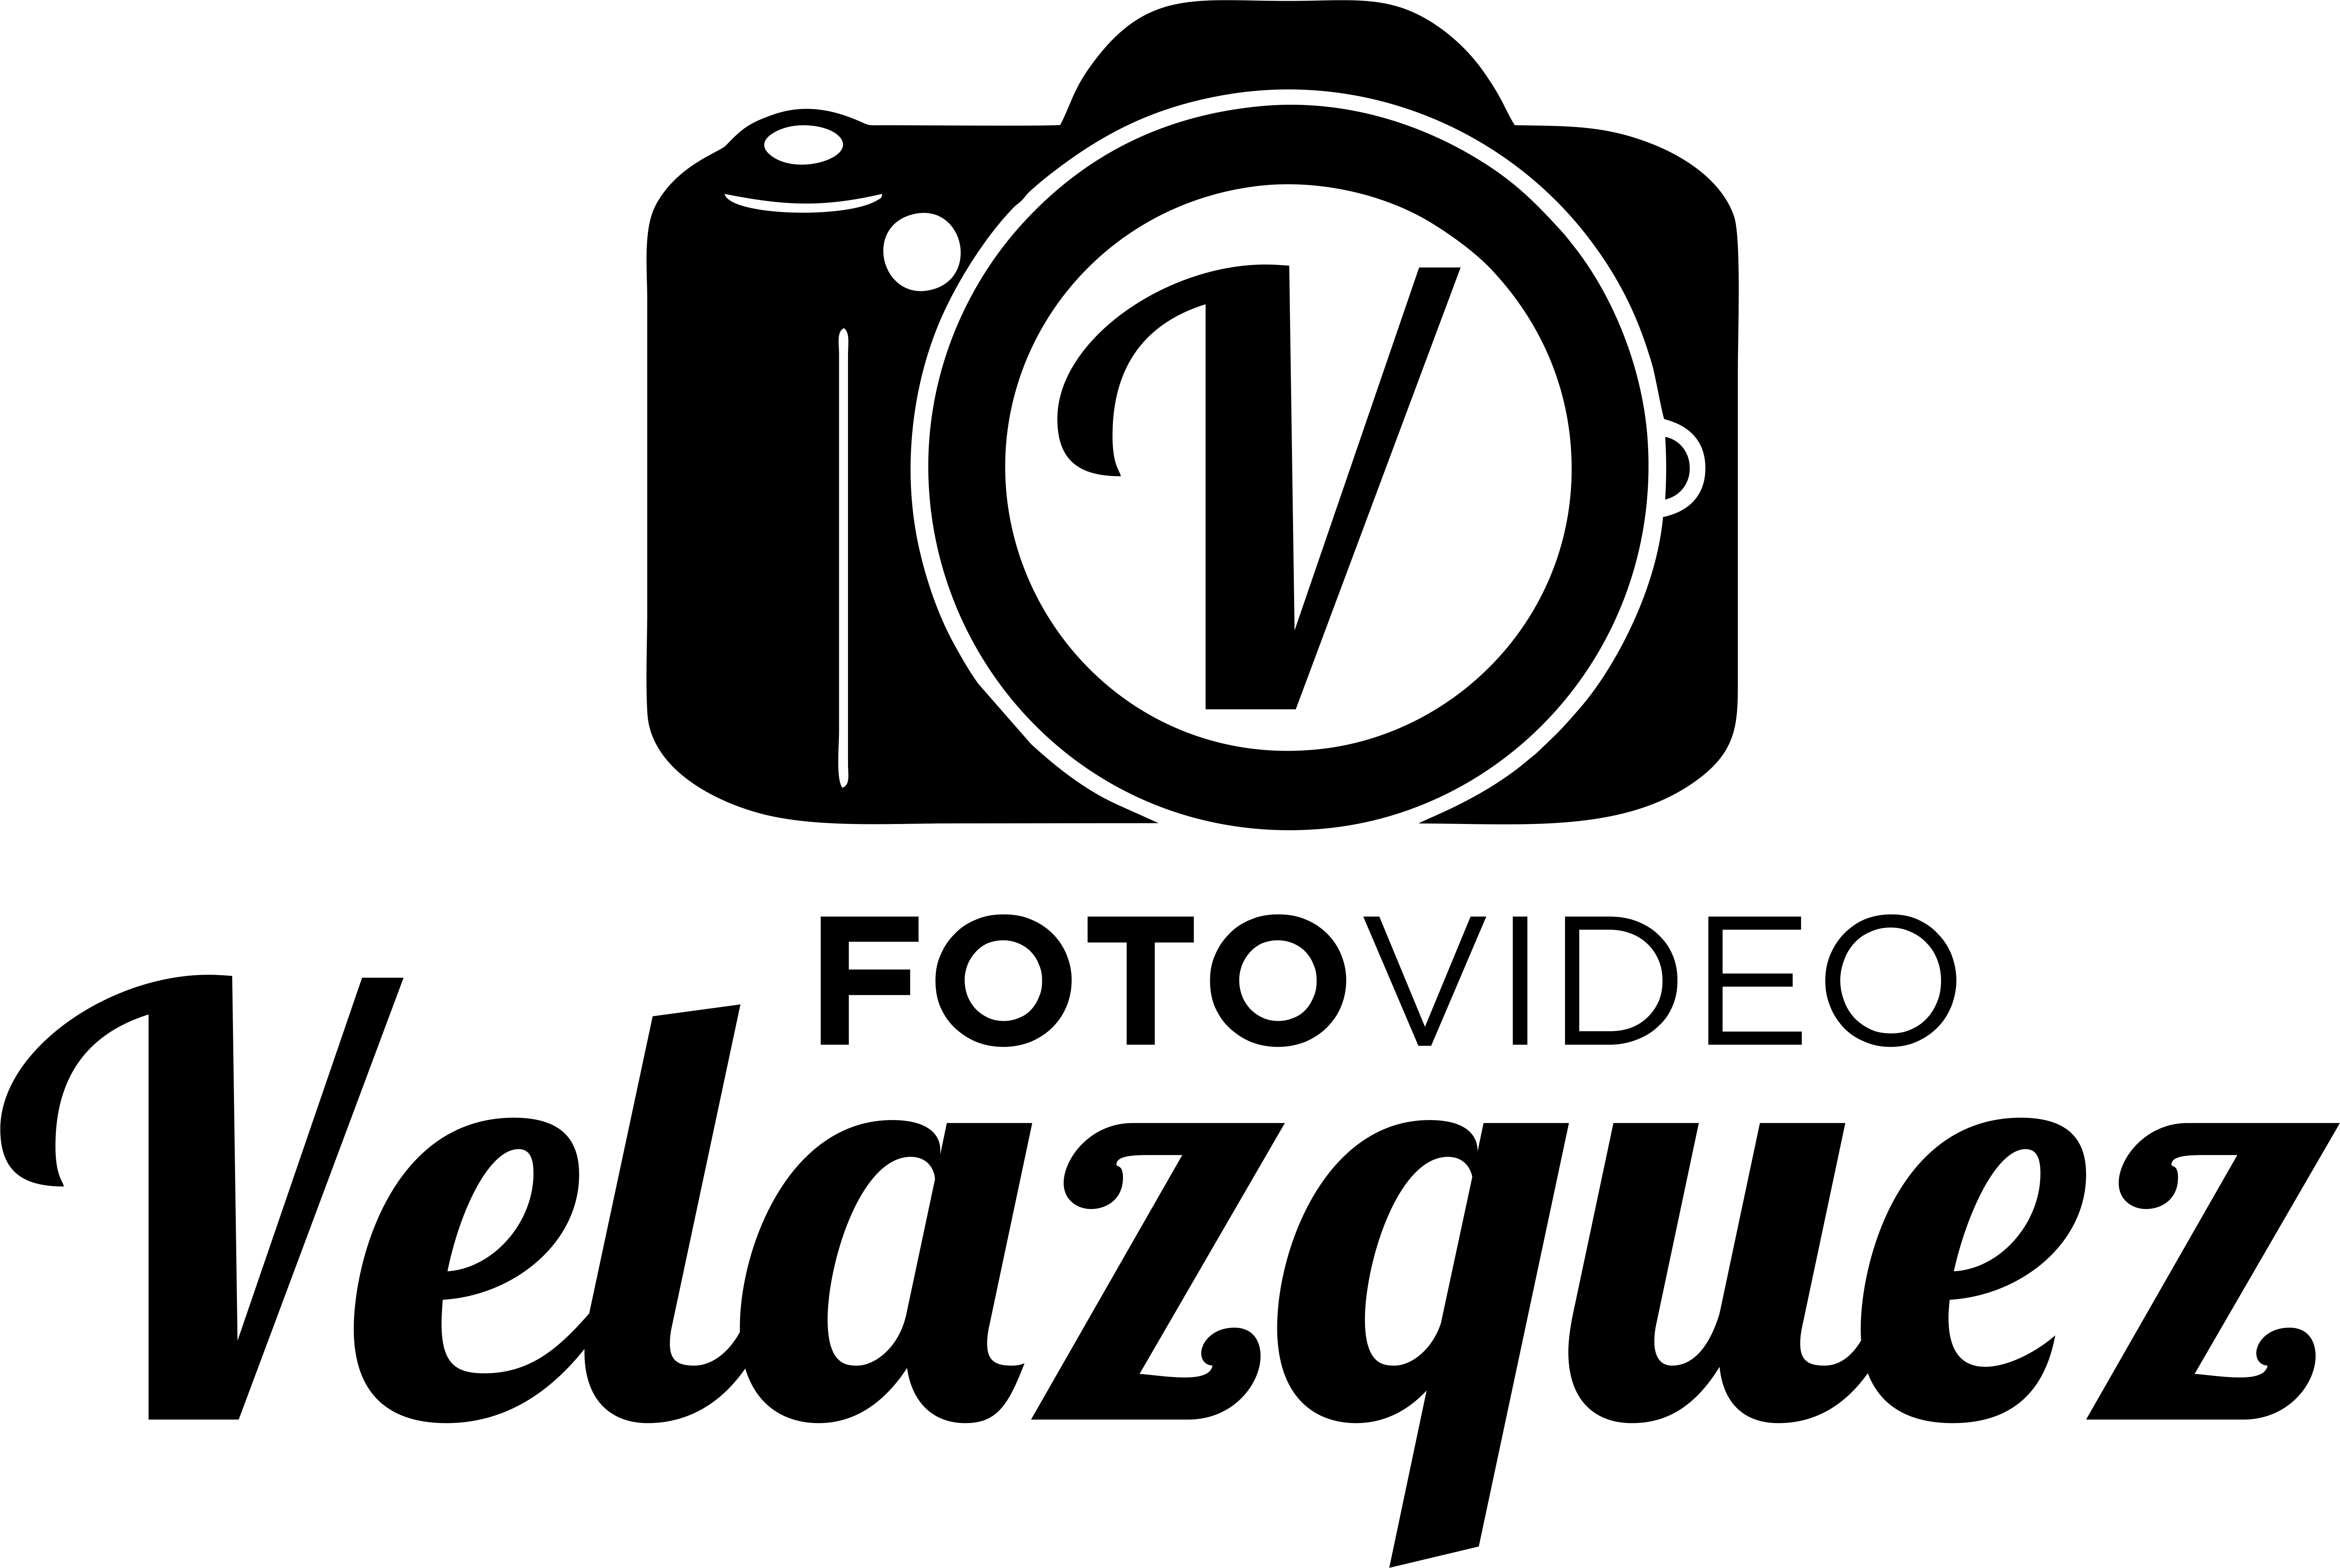 FotoVideo Velázquez